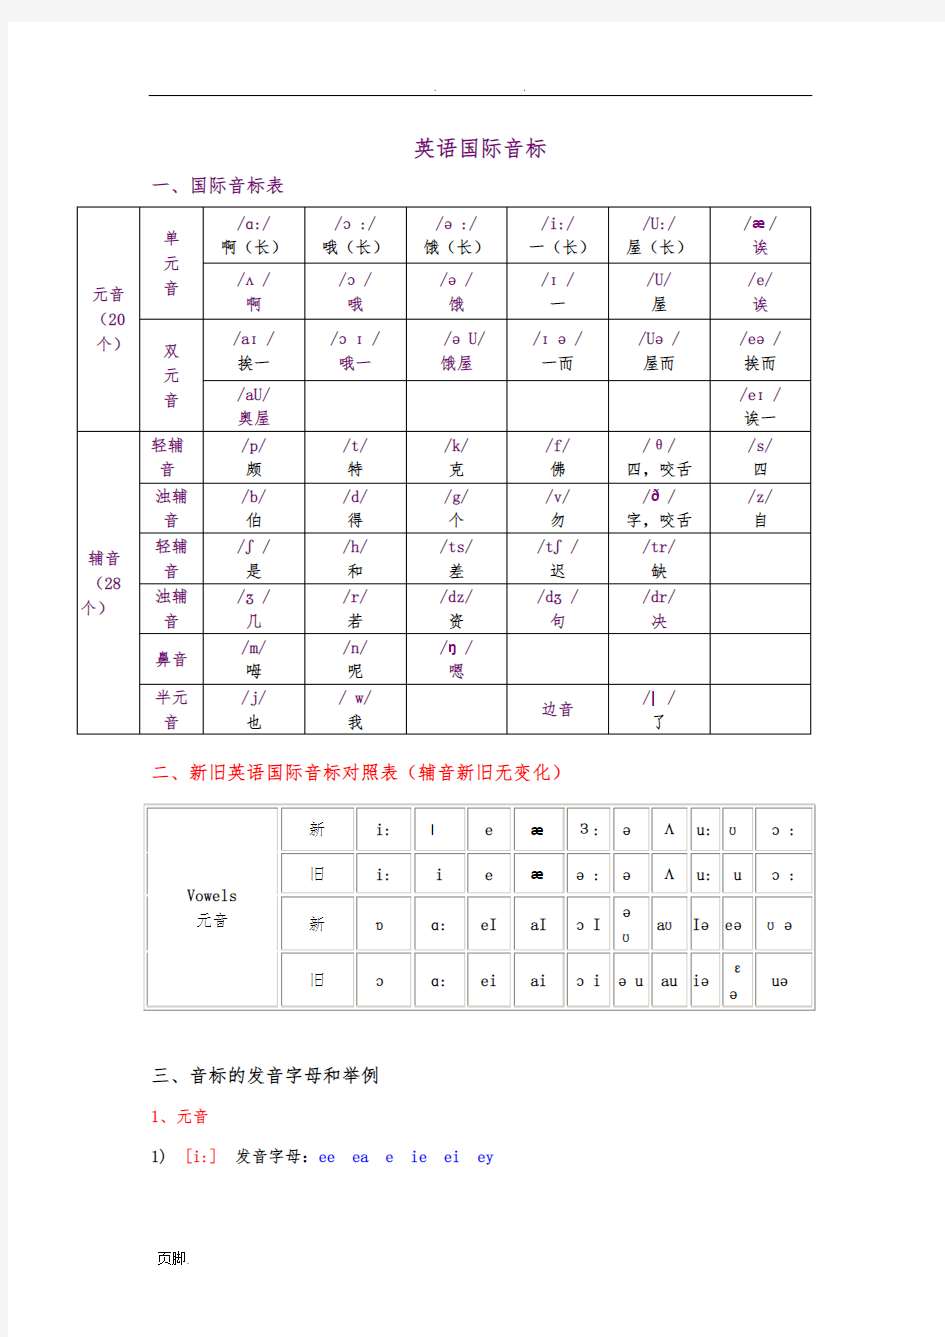 英语国际音标汉字发音、新旧对比、发音字母、单词举例、发音嘴型完整整理